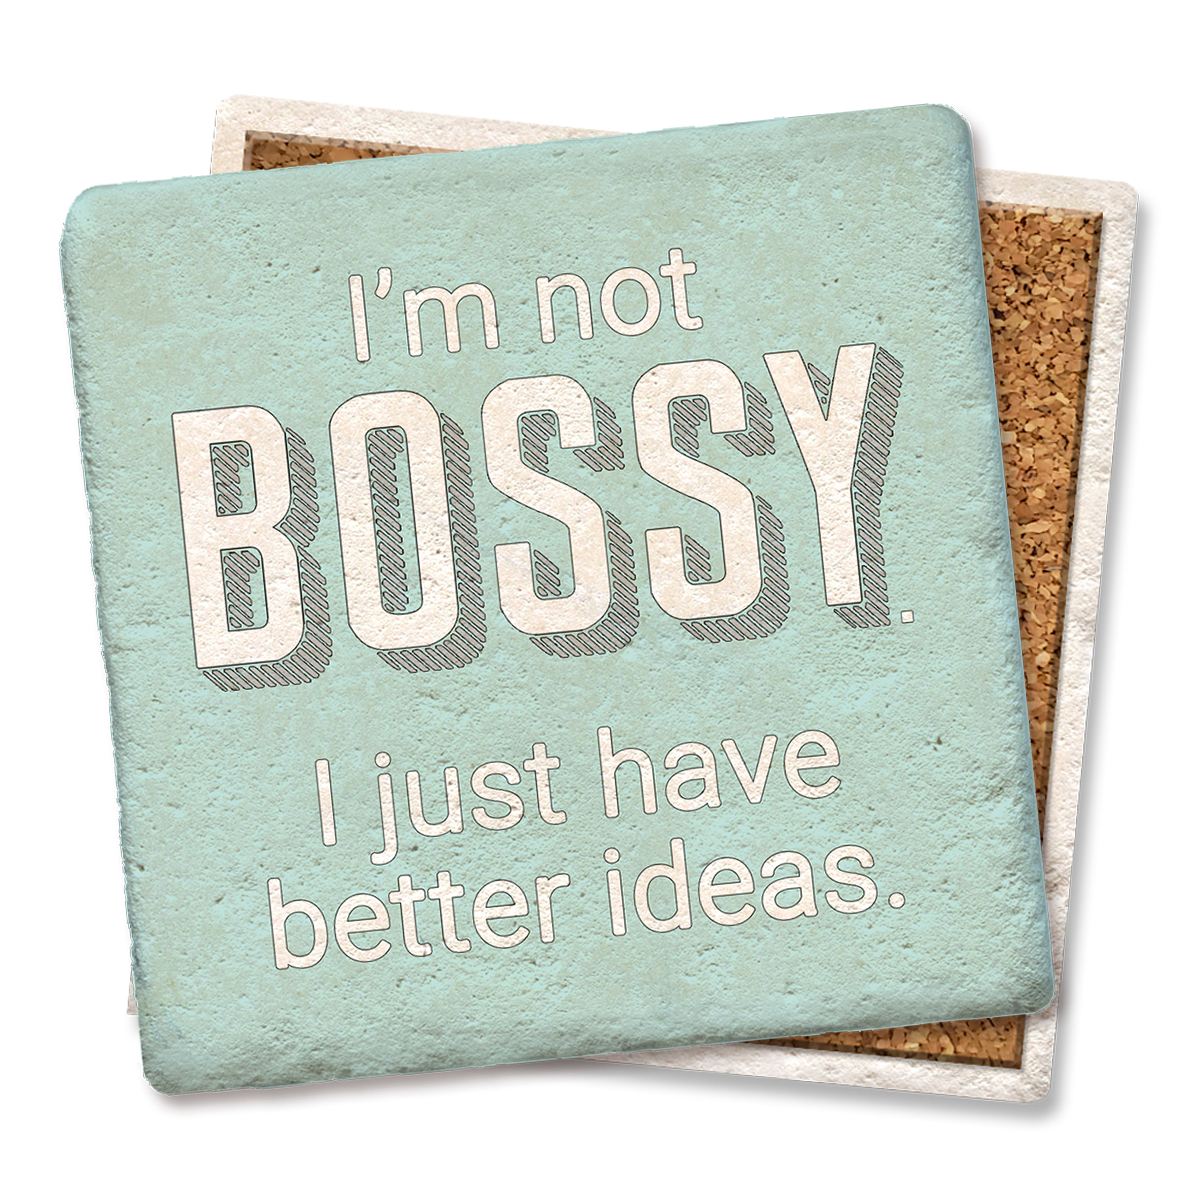 I'm not Bossy Coaster